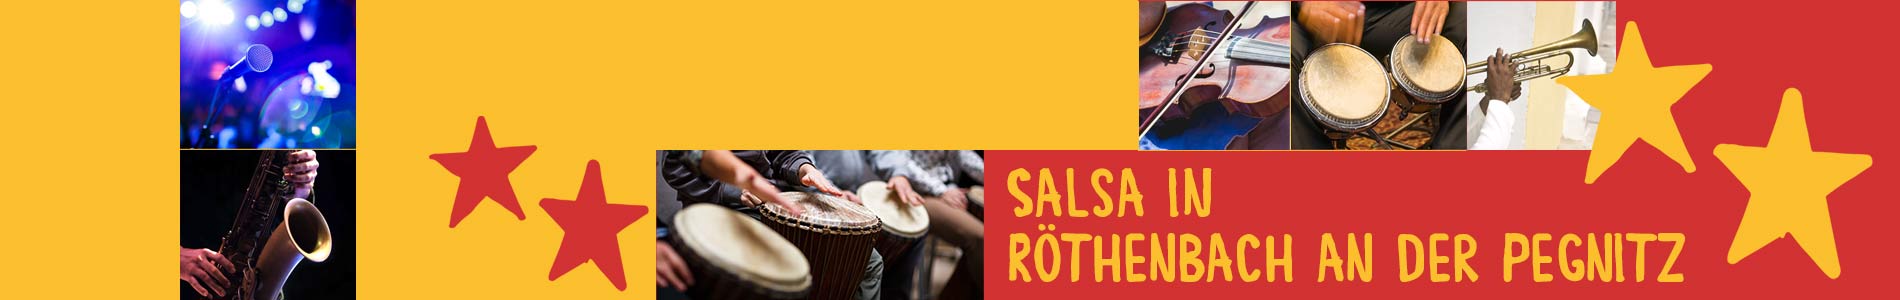 Salsa in Röthenbach an der Pegnitz – Salsa lernen und tanzen, Tanzkurse, Partys, Veranstaltungen